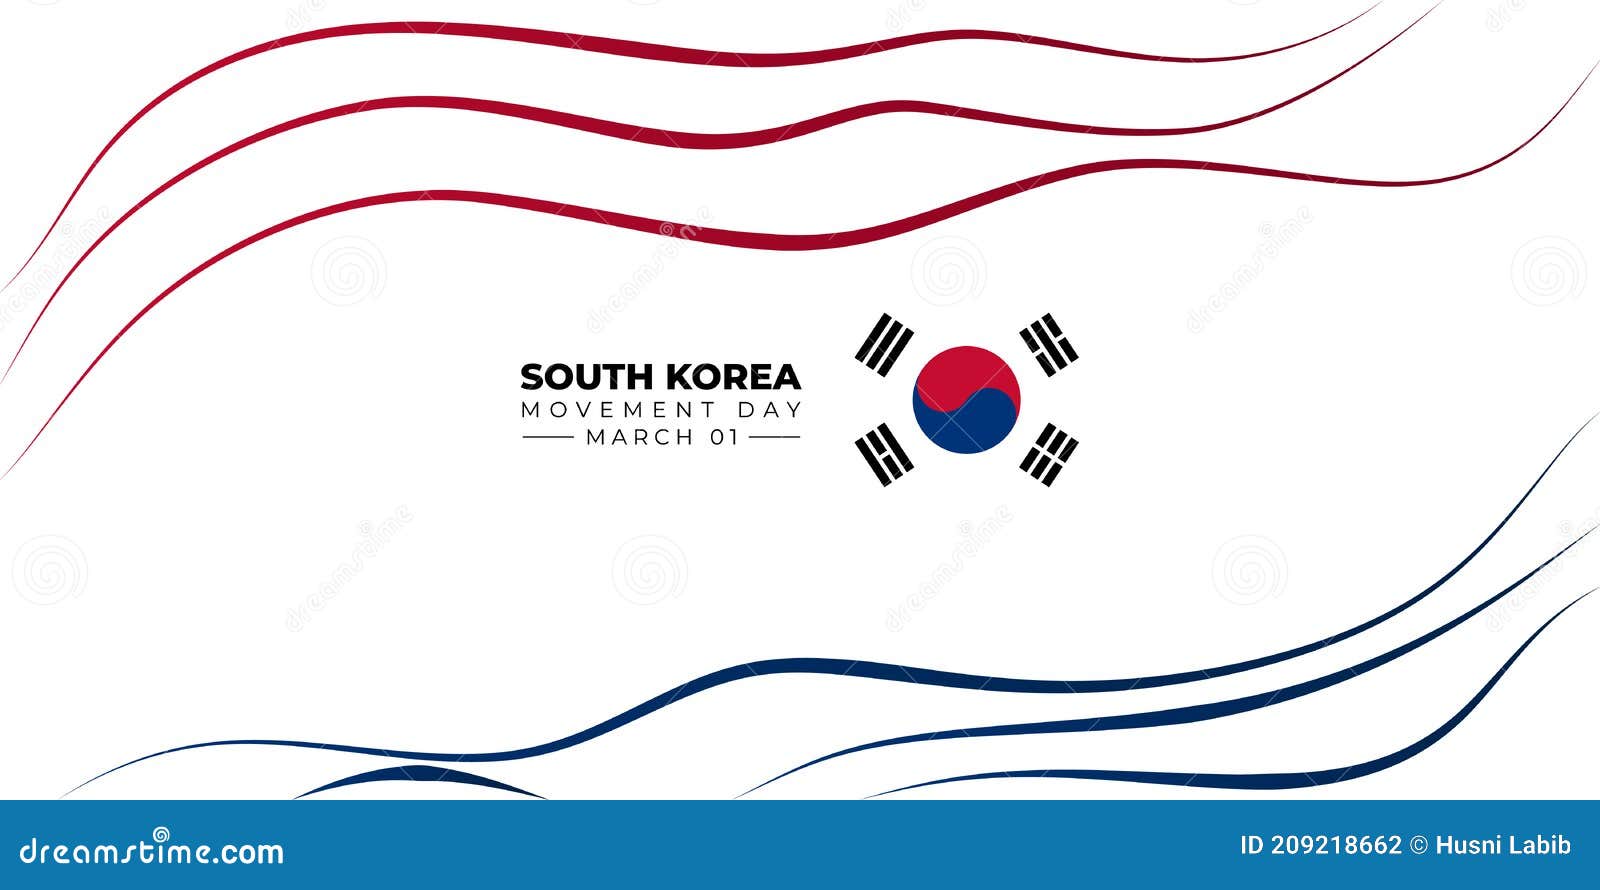 Ngày Diễn ra phong trào độc lập Hàn Quốc: Hãy cùng chào đón ngày Diễn ra phong trào độc lập Hàn Quốc với hình ảnh tuyệt đẹp kéo dài lịch sử và nền văn hóa đa dạng của đất nước này. Đây là dịp để tôn vinh những người đã dấn thân cho phong trào độc lập của Hàn Quốc và đem lại tự do cho dân tộc này. 